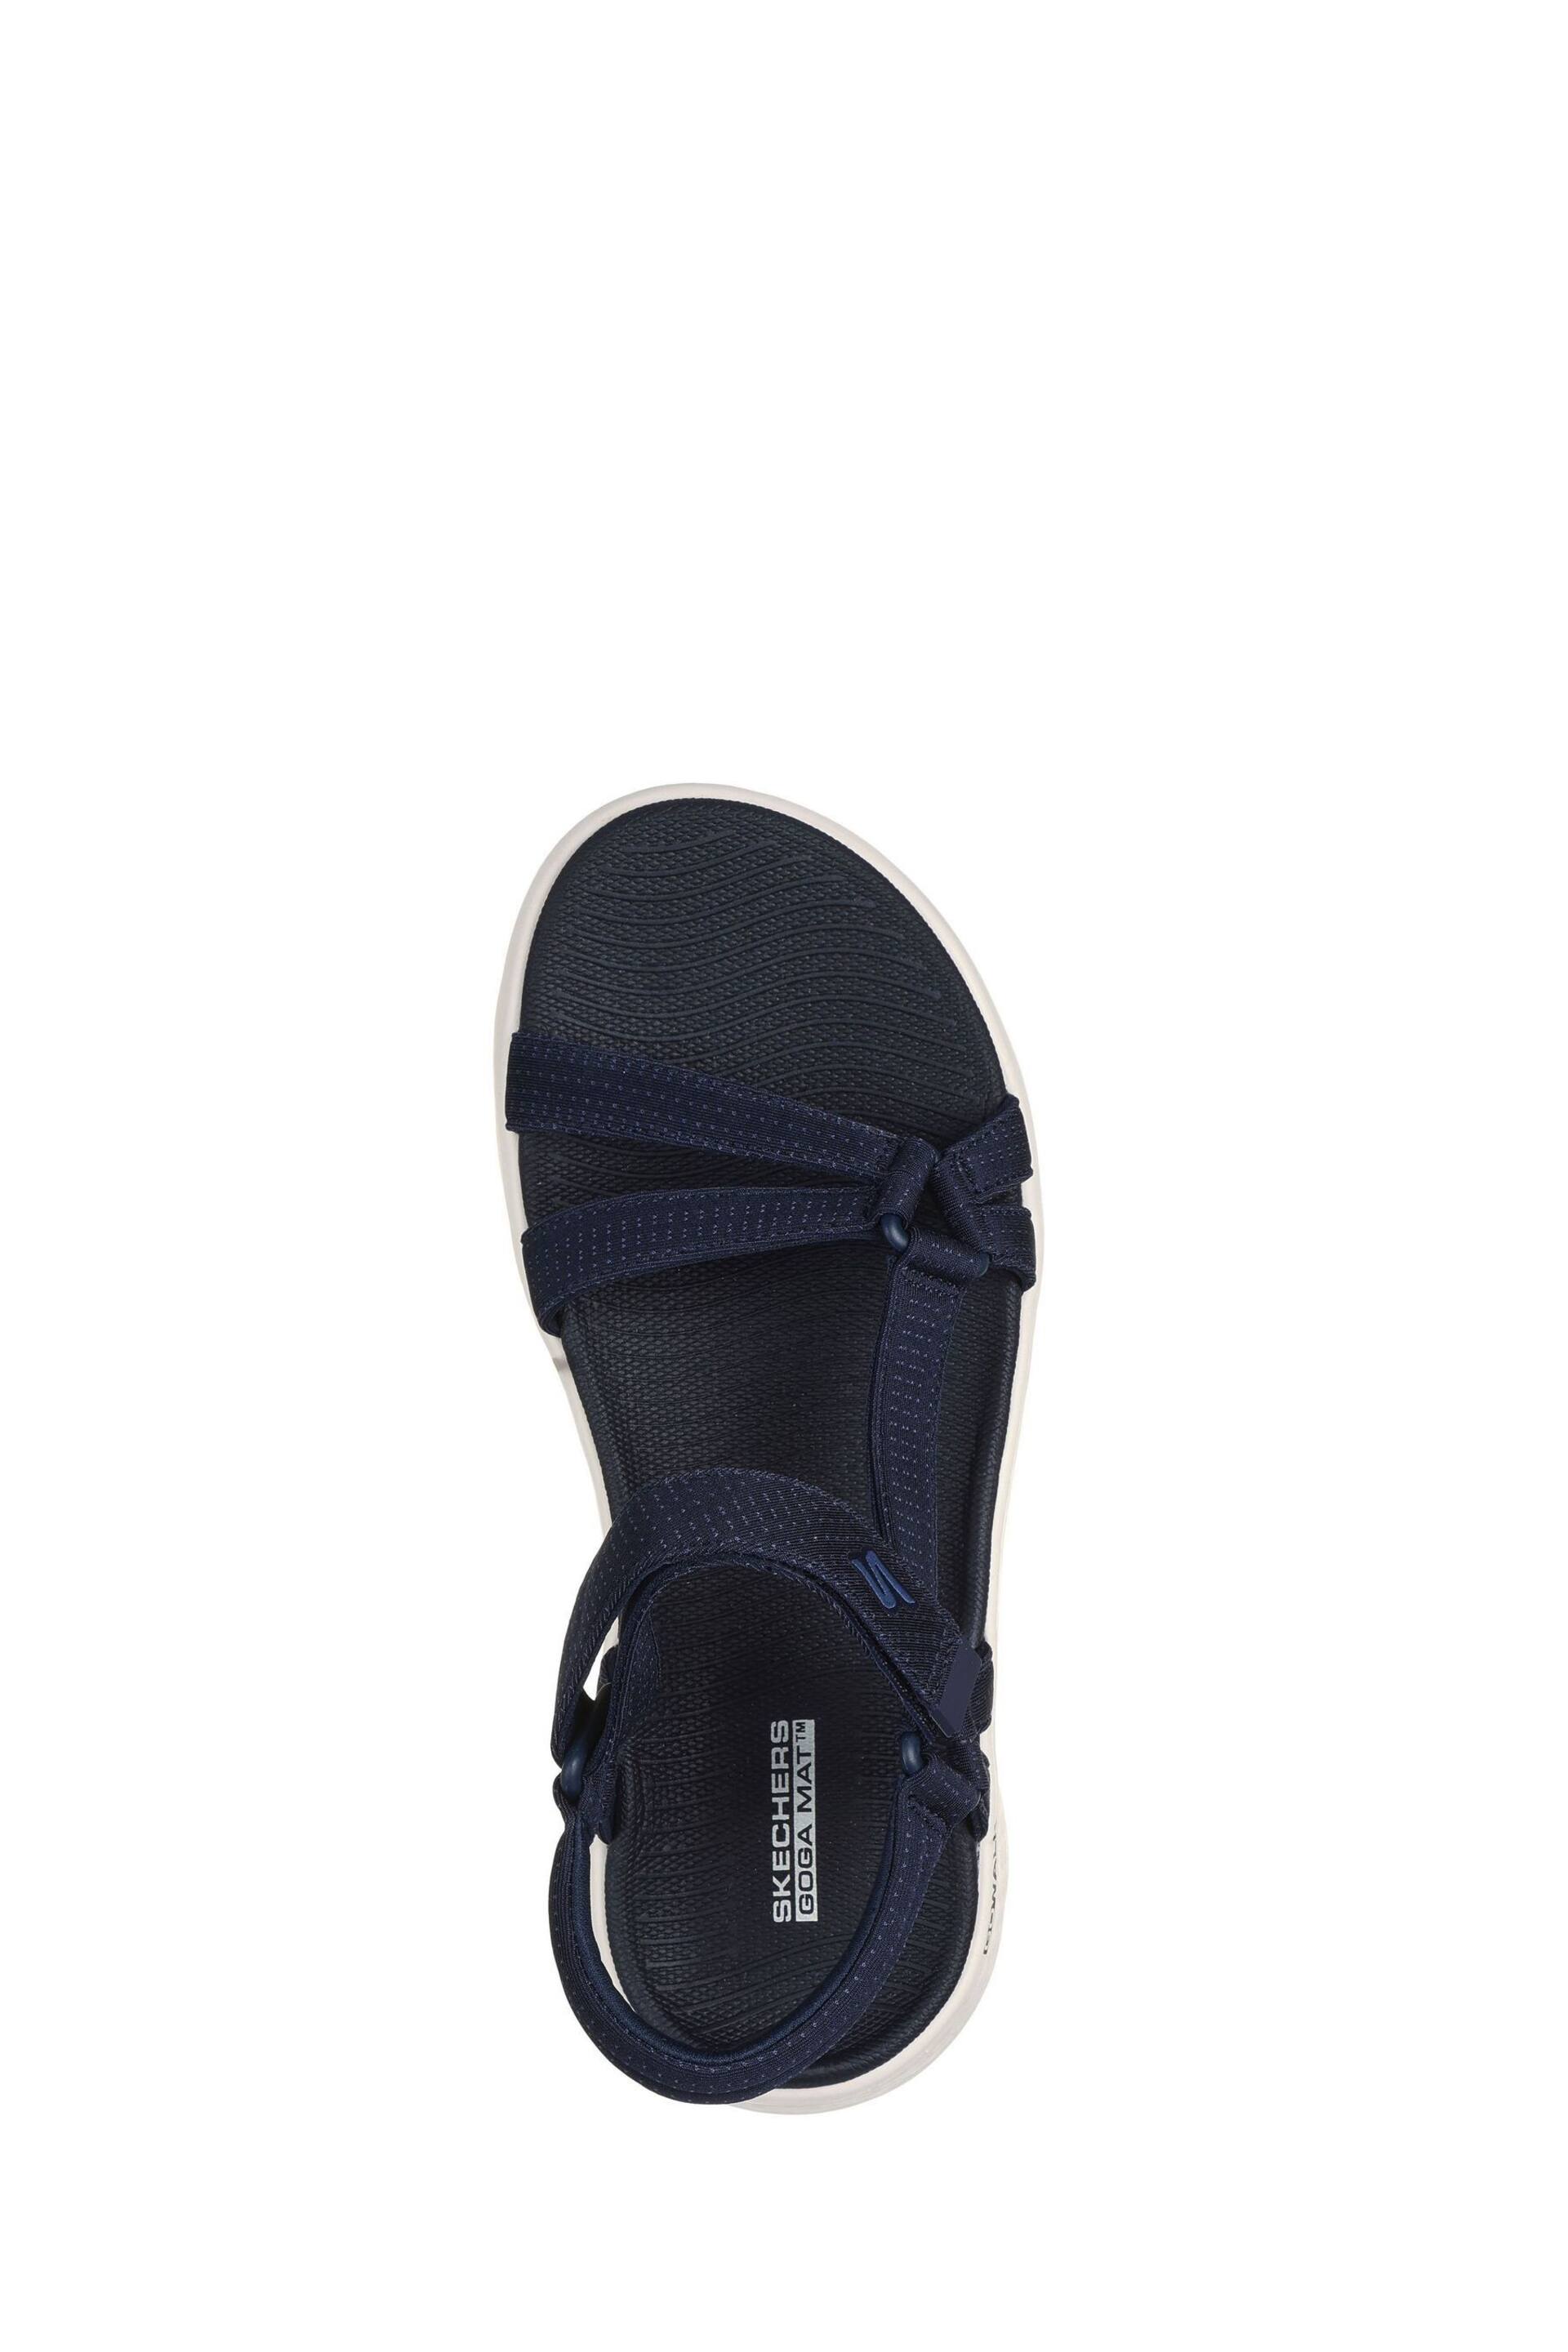 Skechers Blue Go Walk Flex Sublime-X Sandals - Image 4 of 5